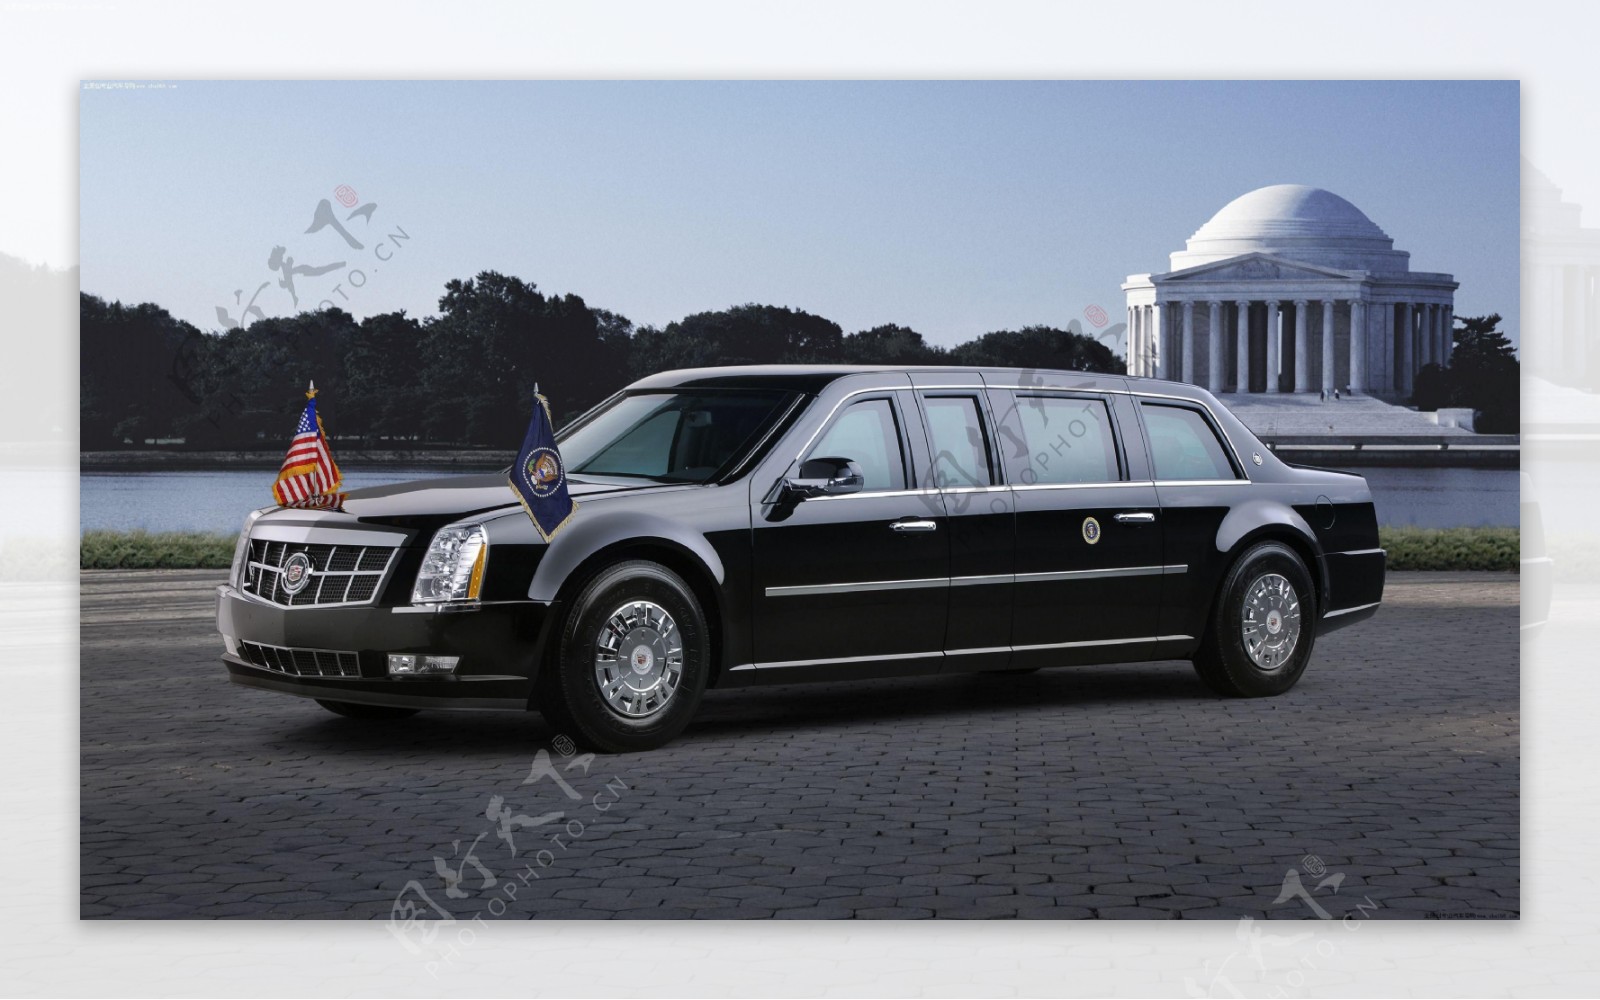 凯迪拉克美国总统专属座驾图片